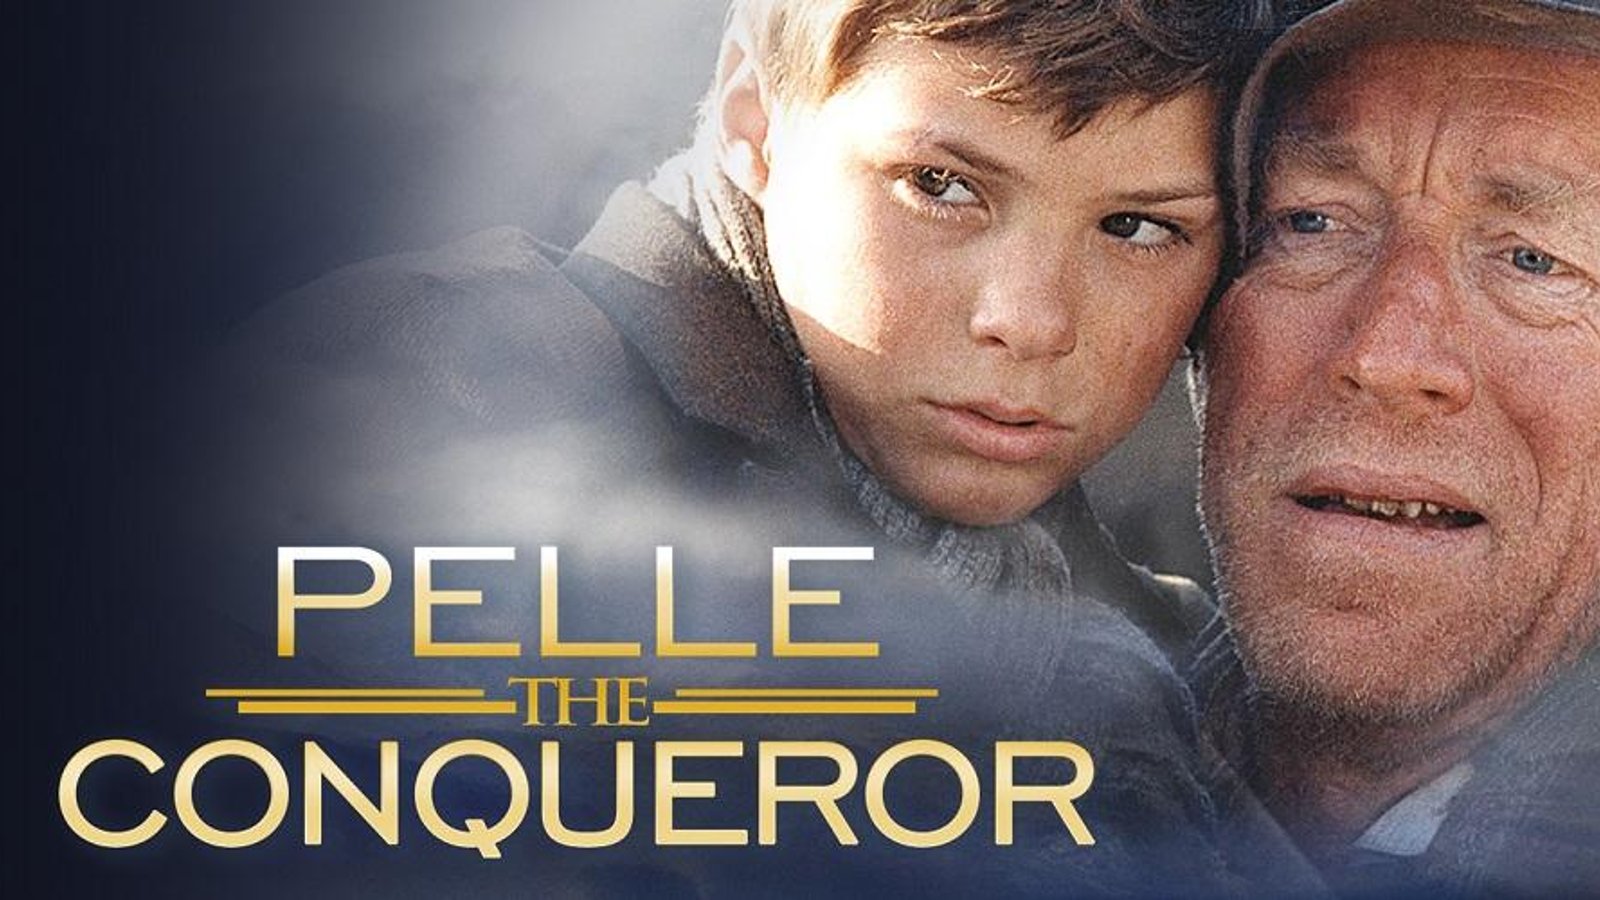 Pelle the Conqueror - Pelle erobreren